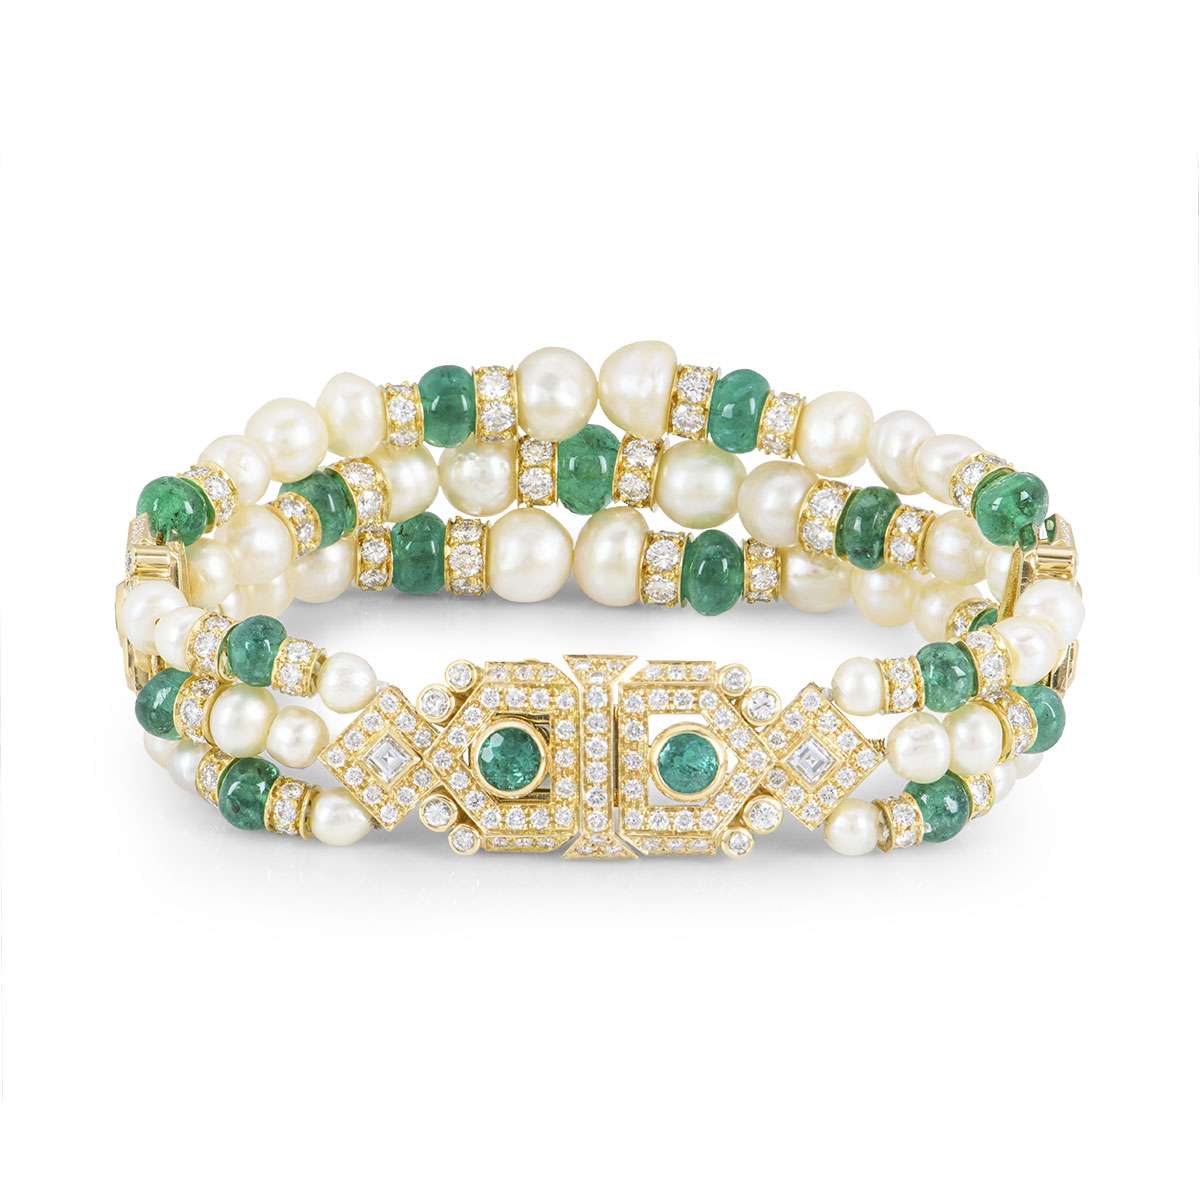 Emerald bracelet gold